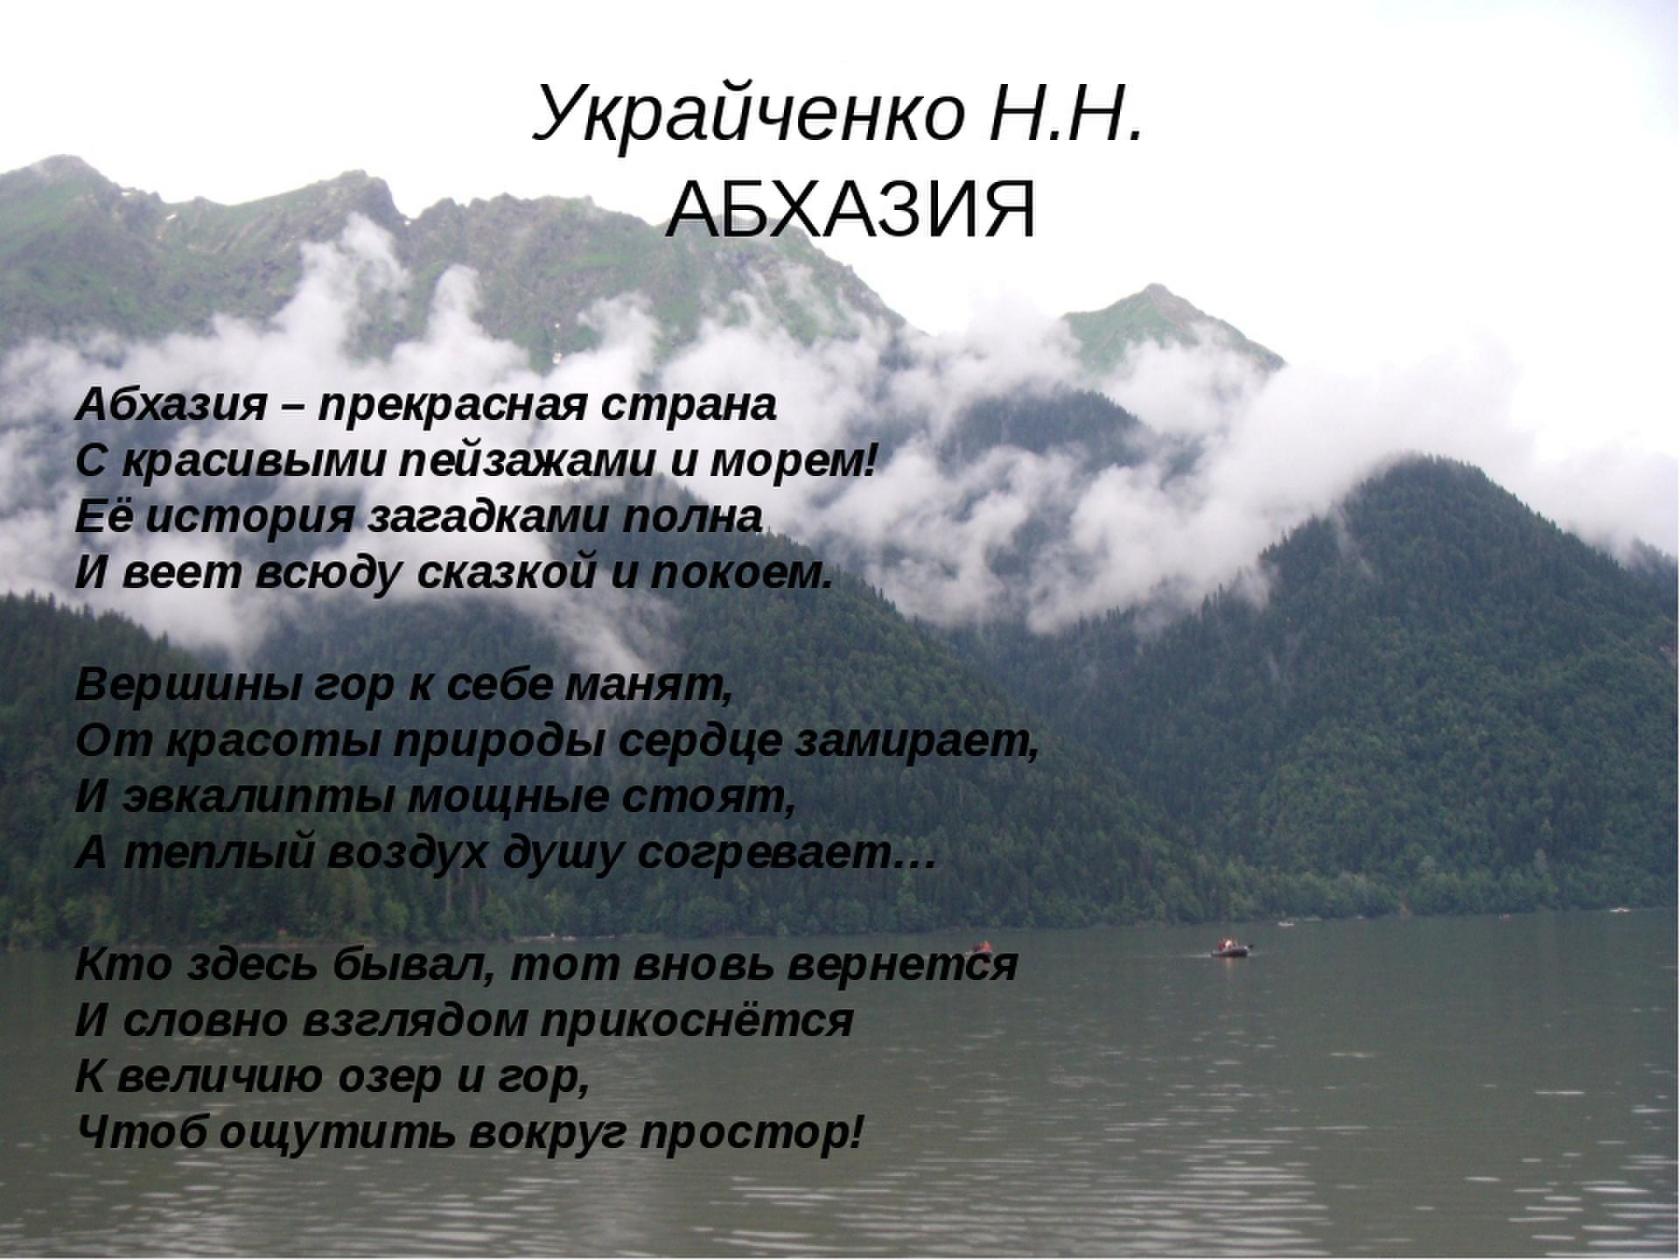 Интересные факты об абхазии. Стихи про Абхазию. Цитаты про Абхазию. Высказывания про Абхазию красивые. Высказывания об Абхазии.